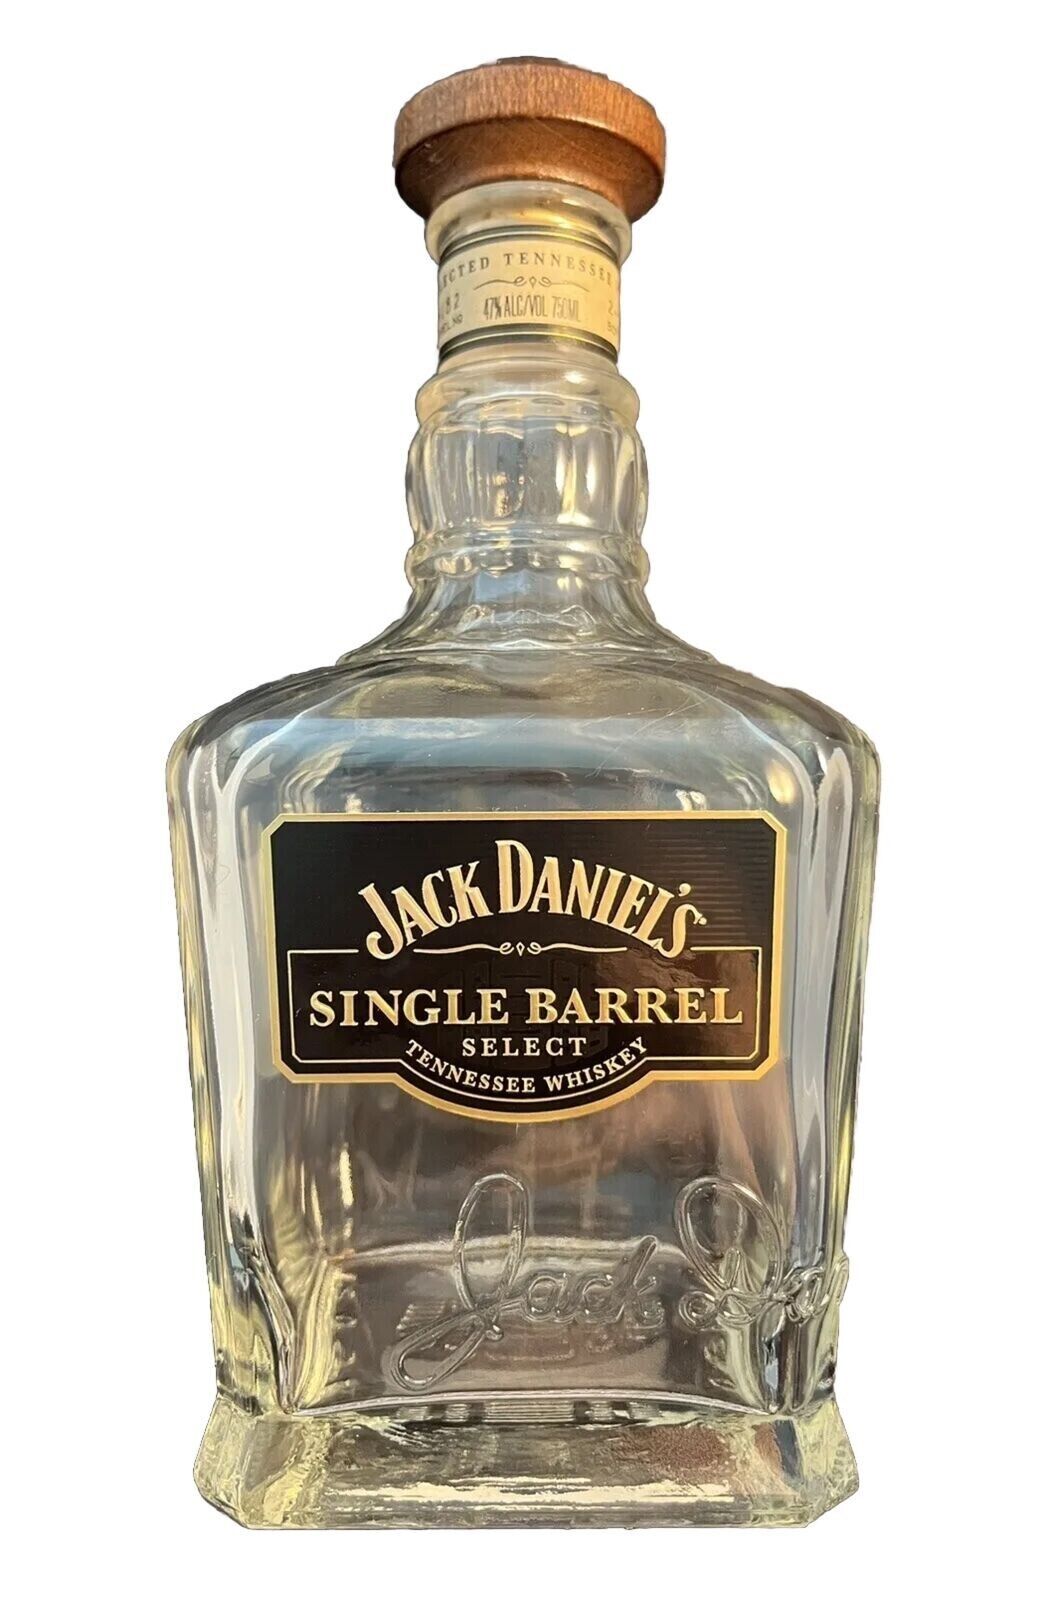 Jack Daniel’s Single Barrel Select Empty Bottle 750ml Feb 27th 2013 Bottle Date